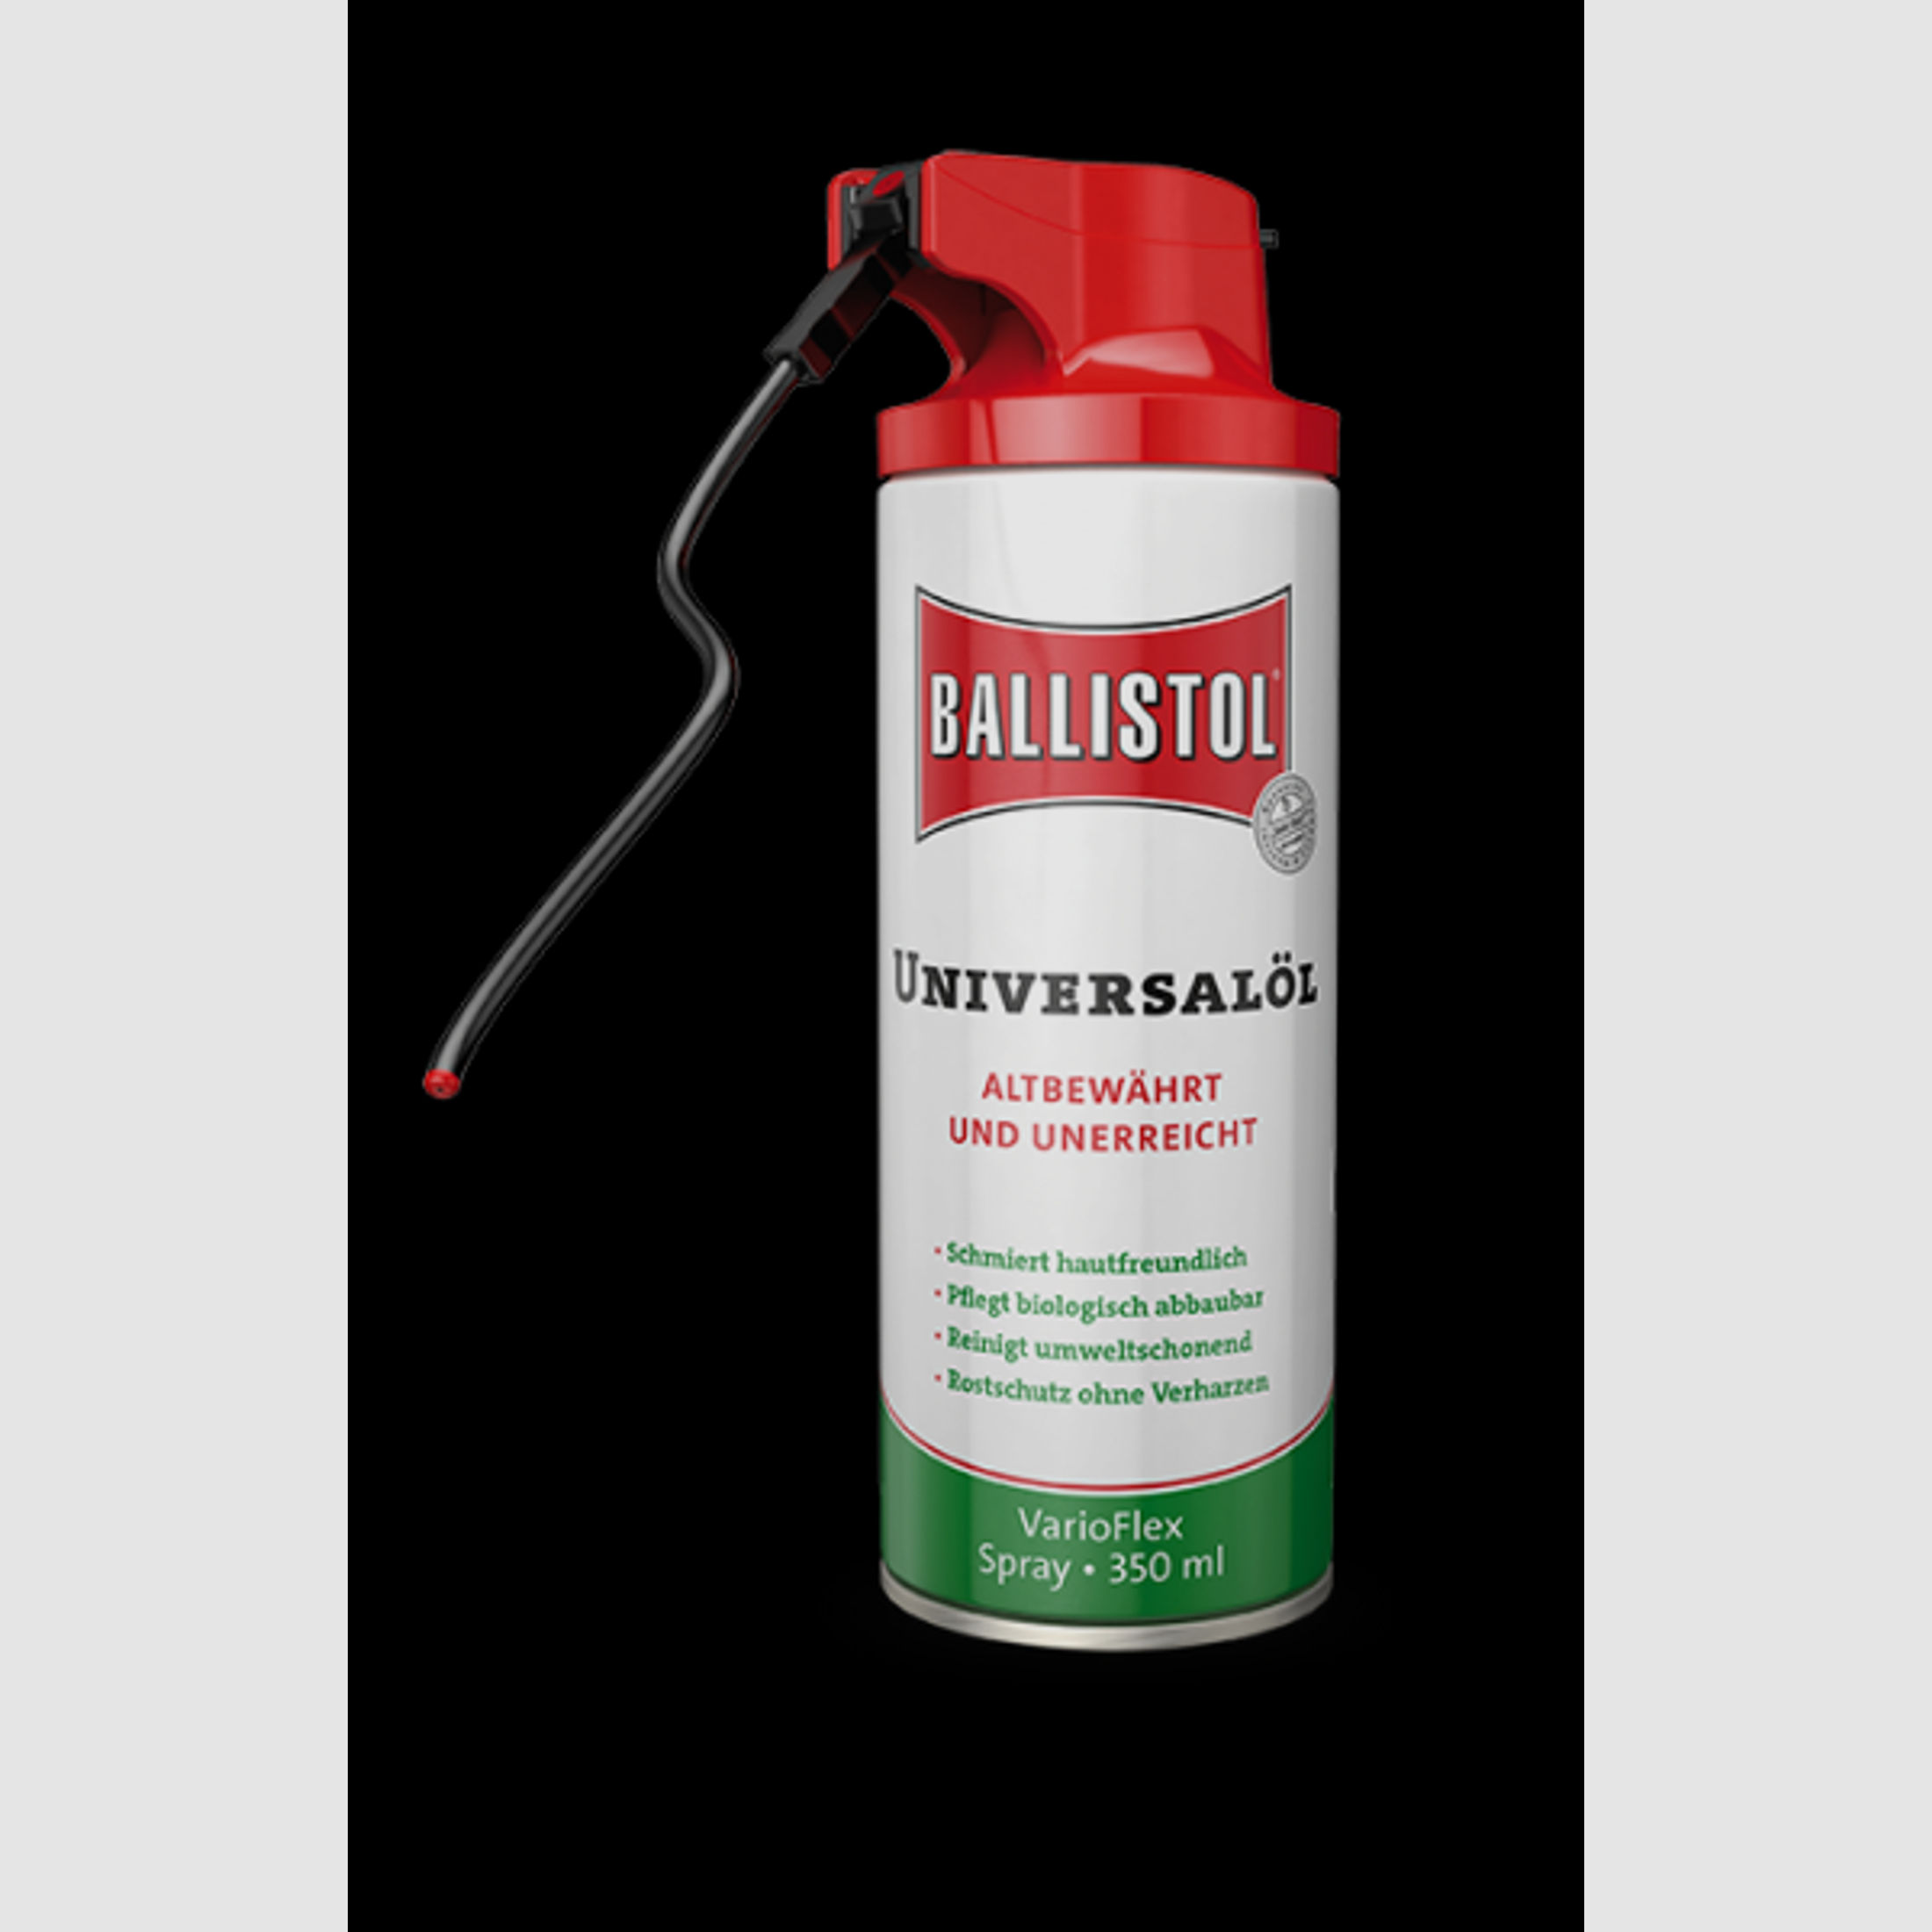 Ballistol Universalöl VarioFlex Spray #21727 | Waffenöl Waffen- Holz- und Lederpflege | 350ml > NEU!